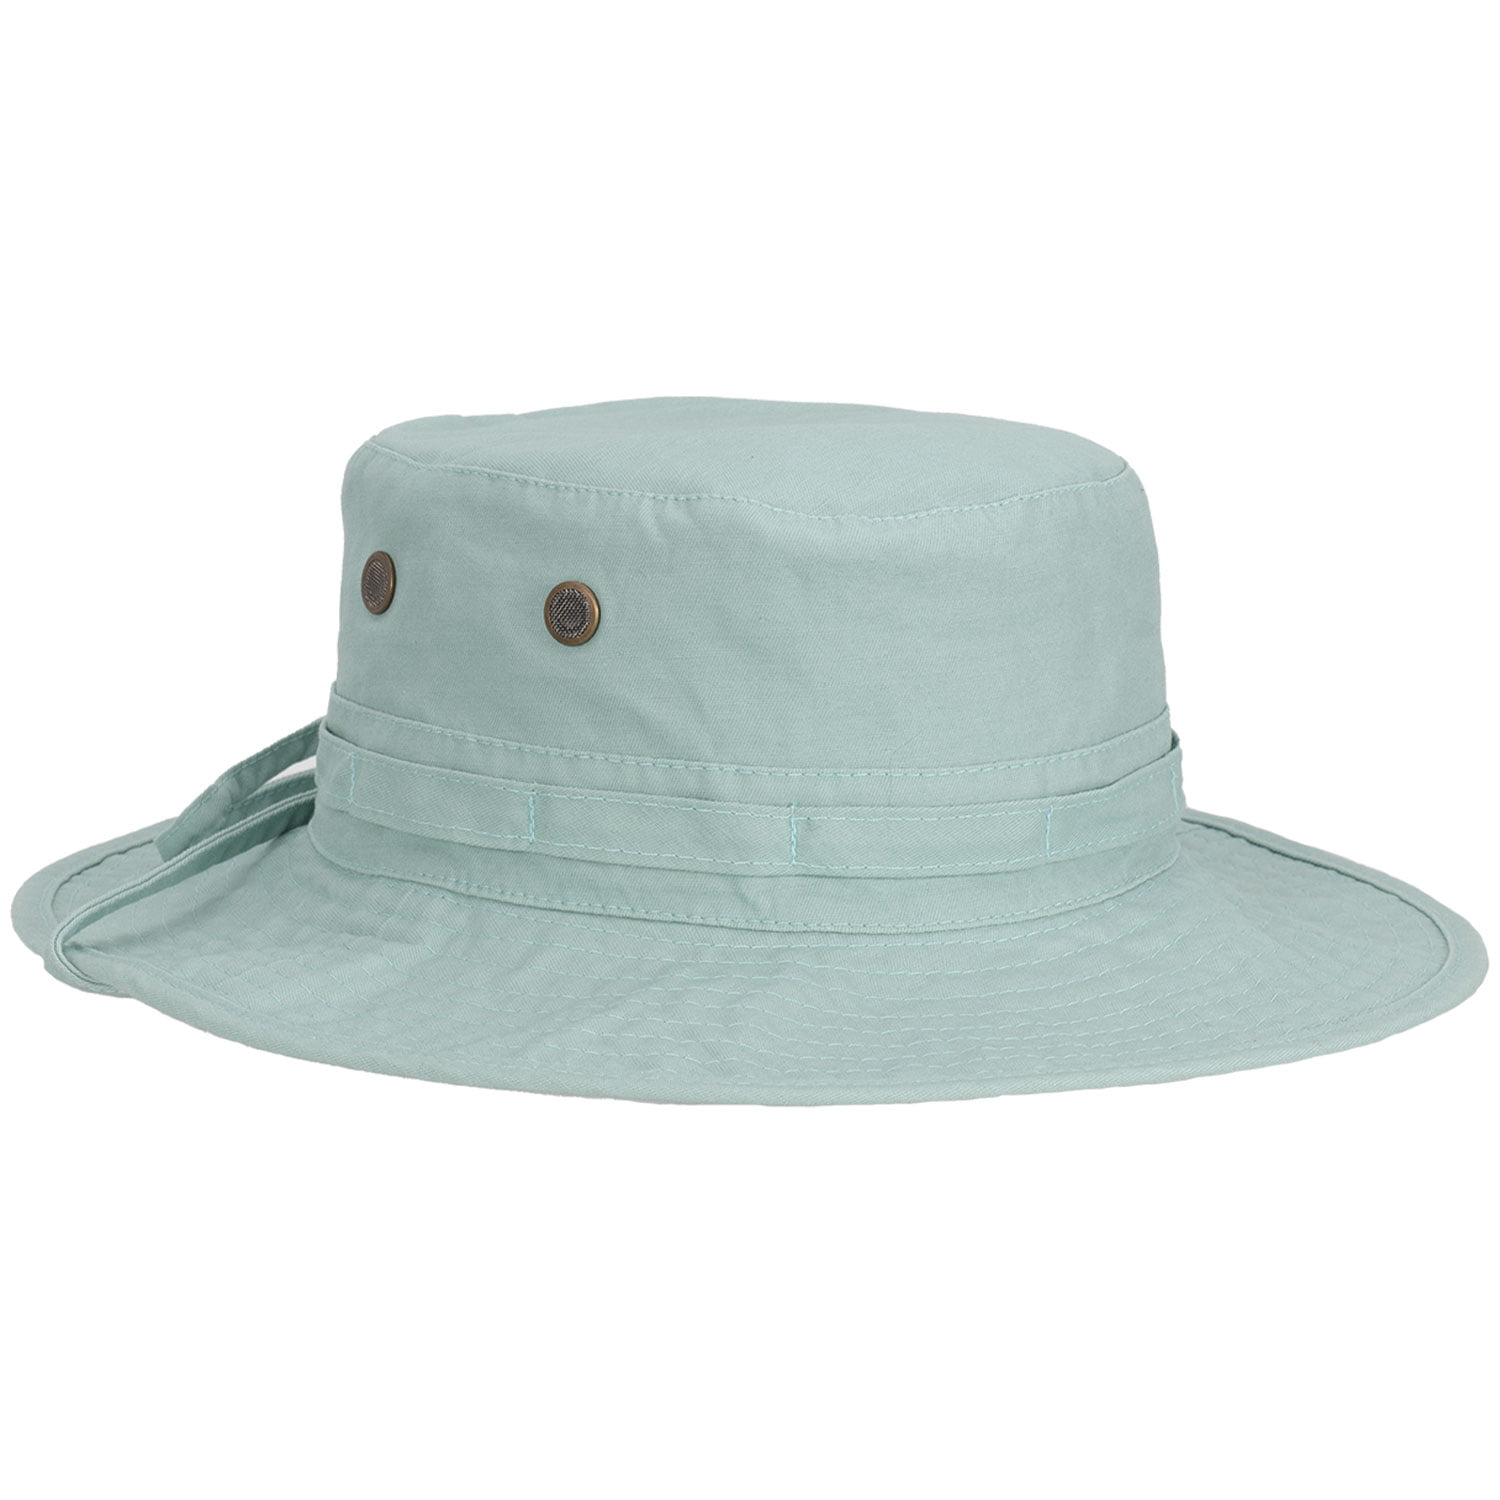 Panama Jack Women's Bucket Hat - Palm Print Underbrim, Packable